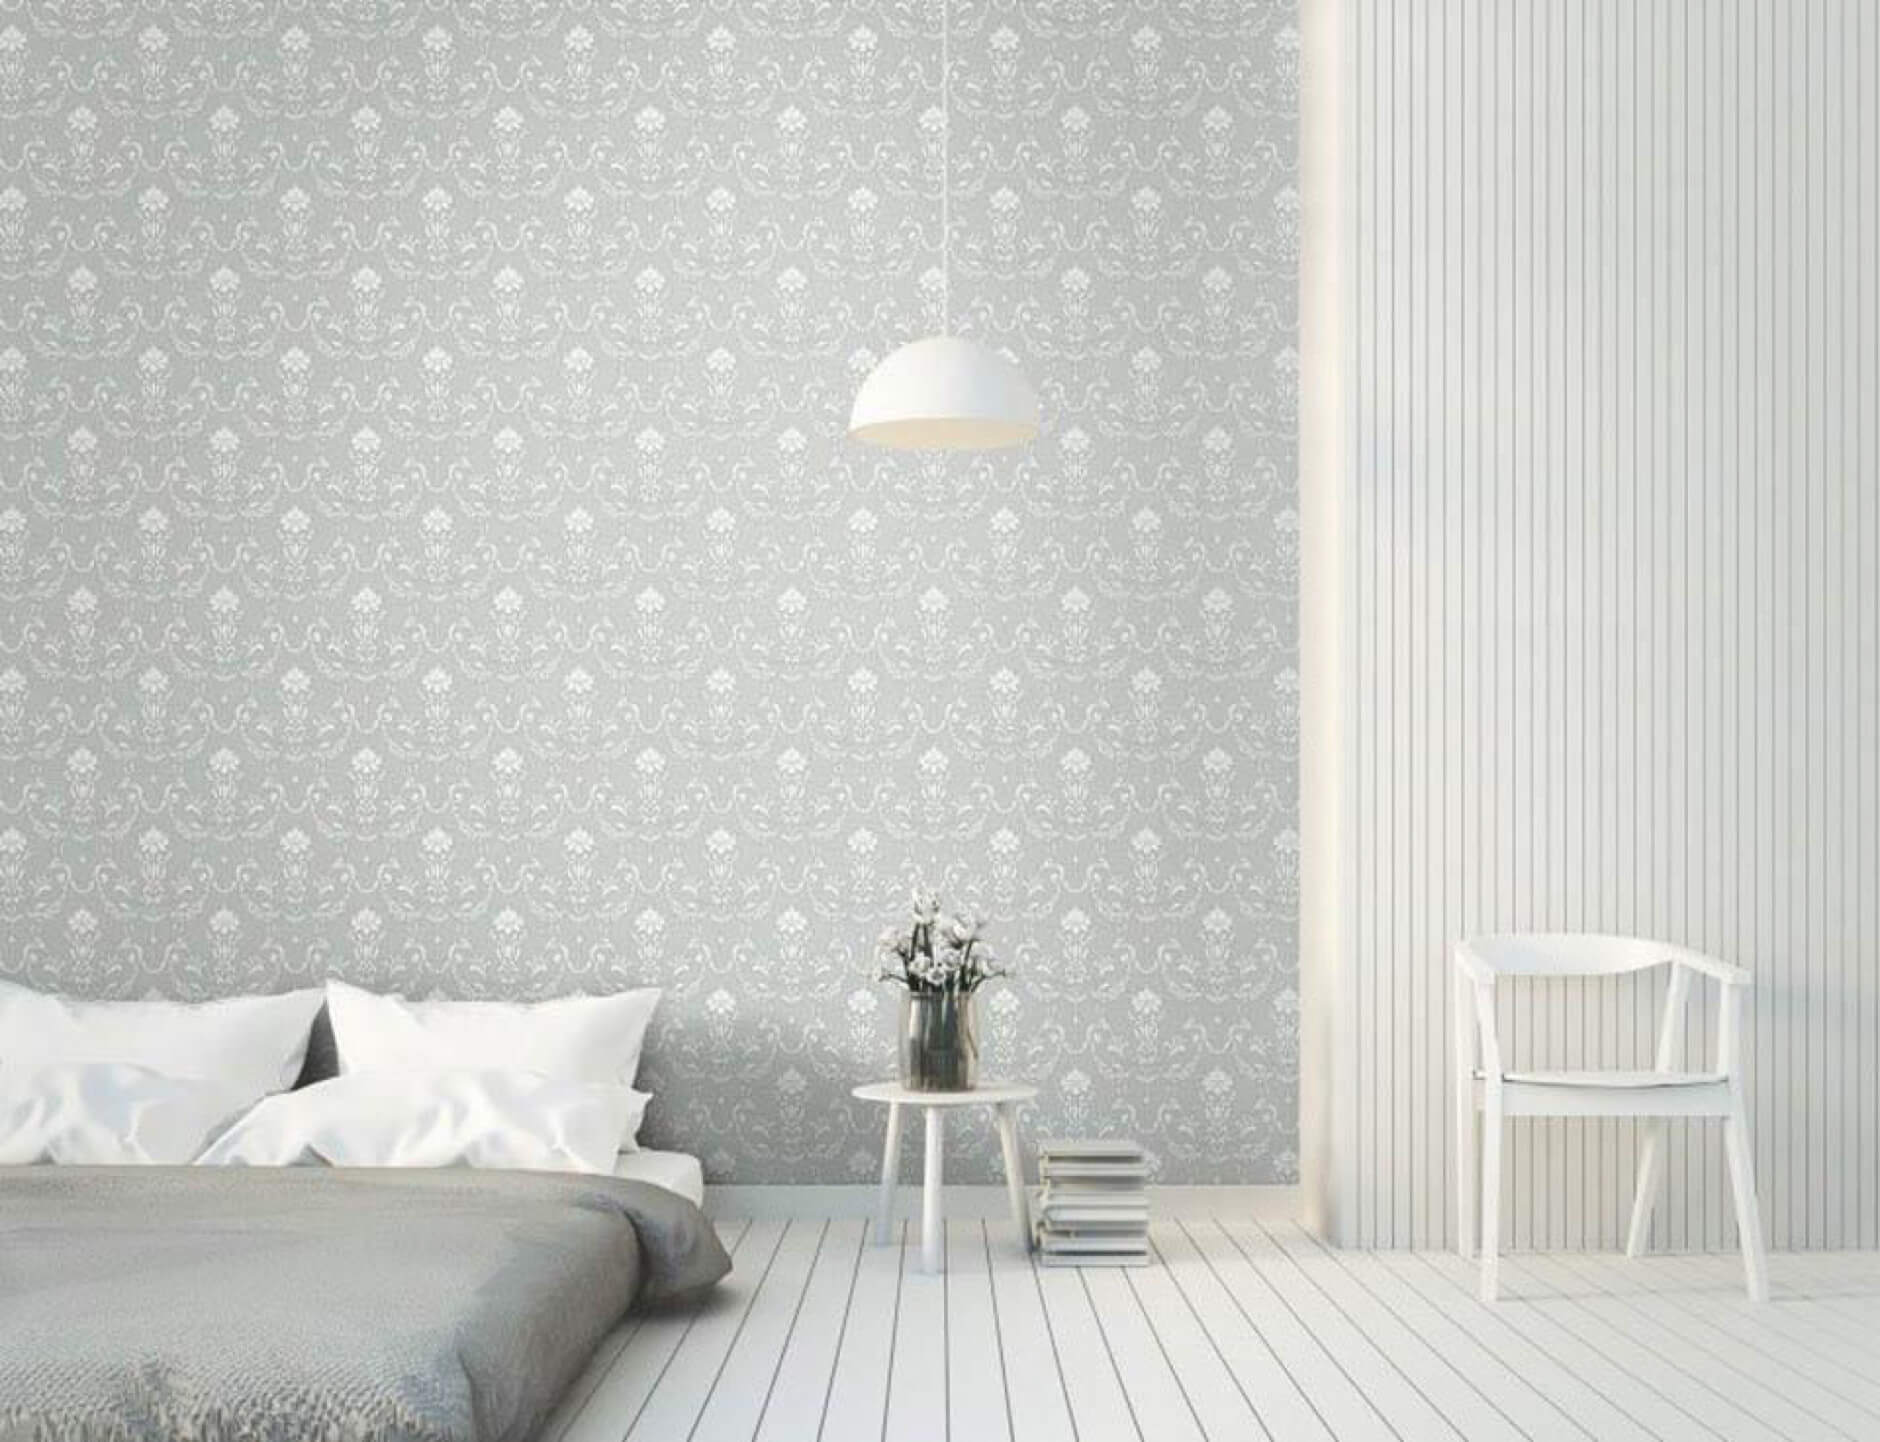 Cách trang trí phòng ngủ bằng giấy dán tường